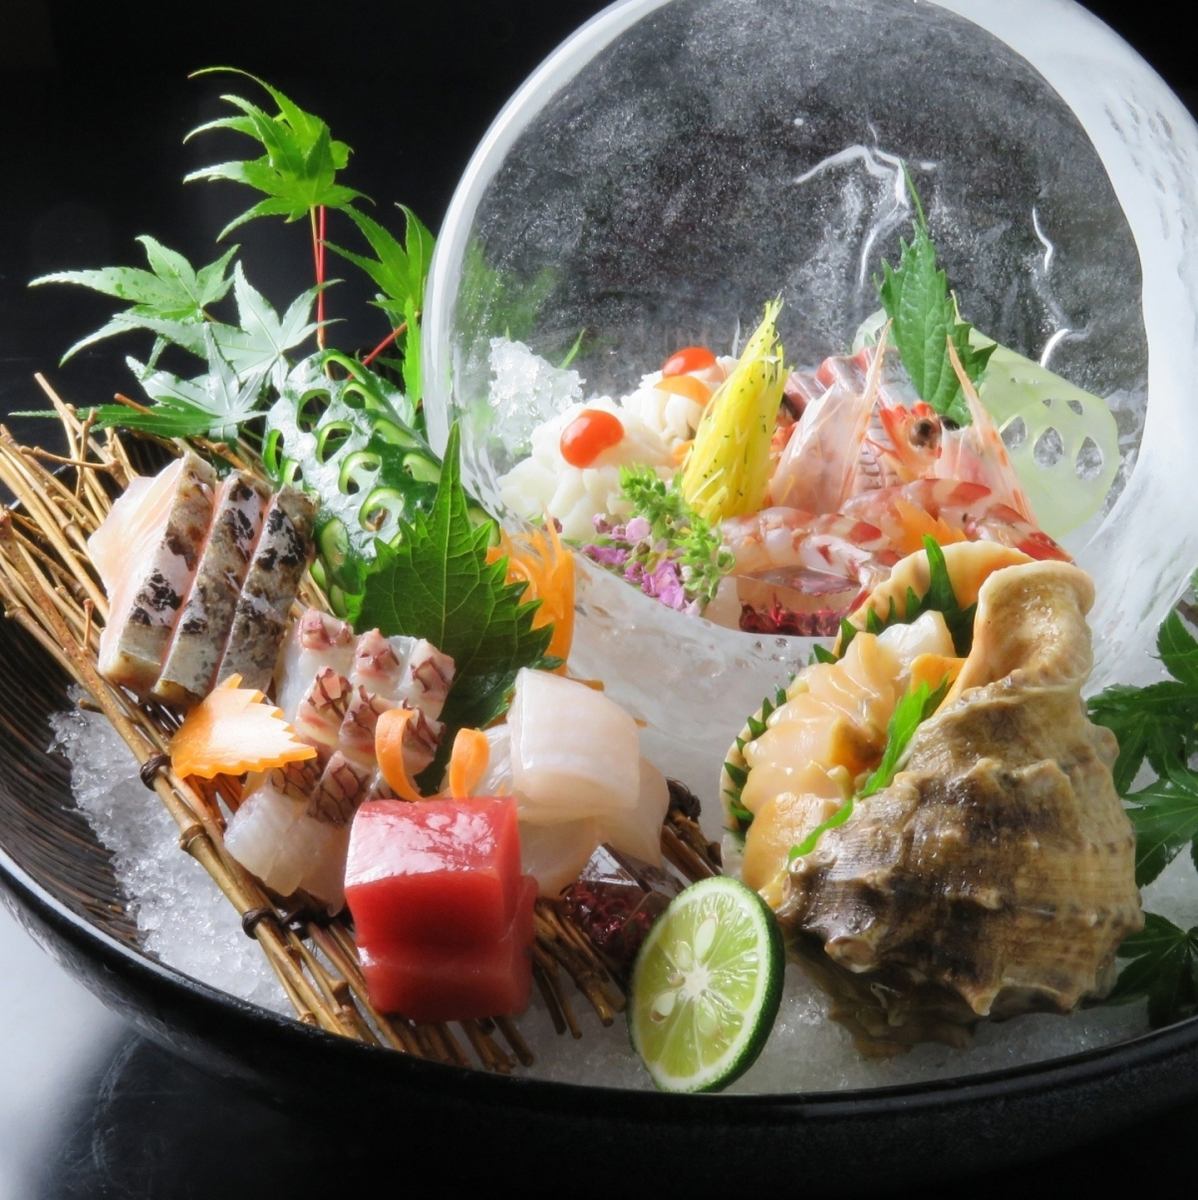 사계절의 맛있는 생선을 최고의 모리 첨부로! 제철 생선을 사용한 초밥도 인기.